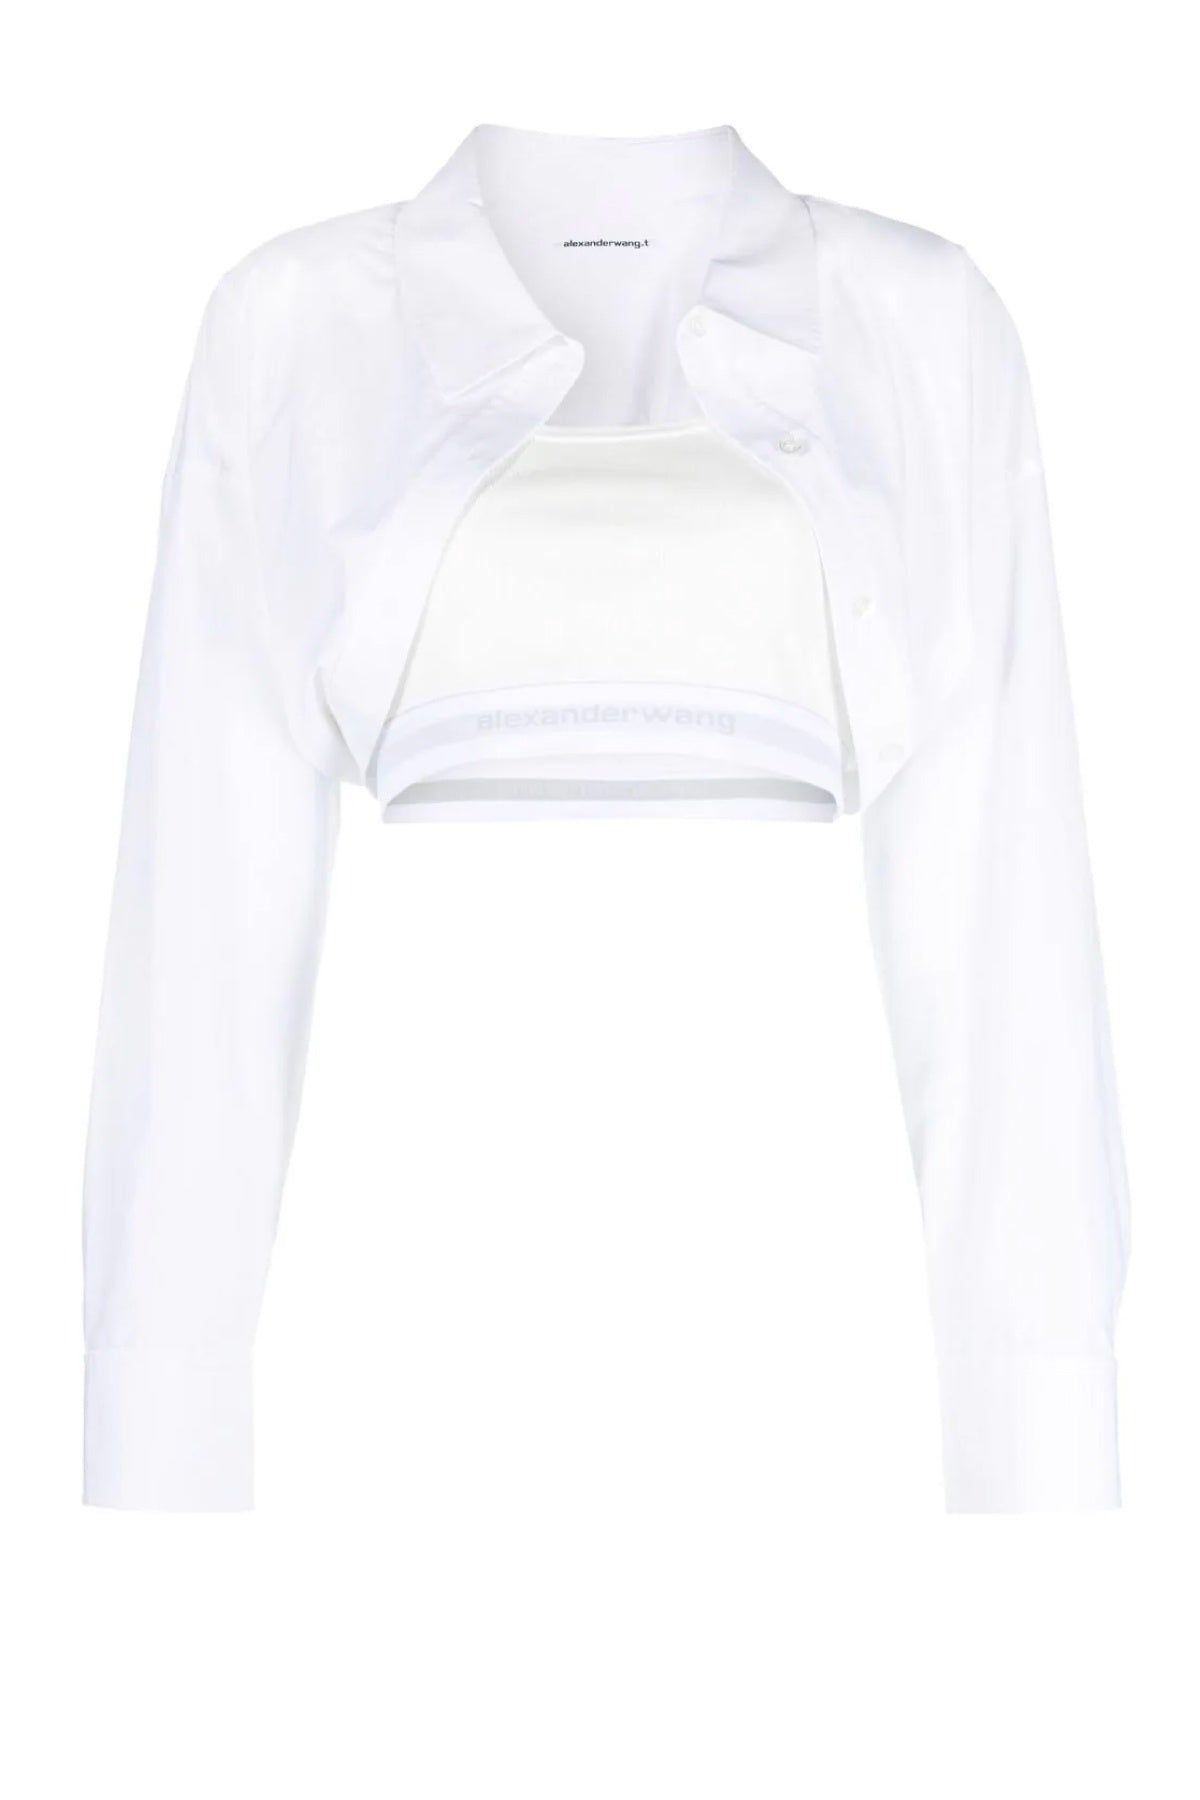 alexanderwang.t Layered Crop Bolero Shirt - White